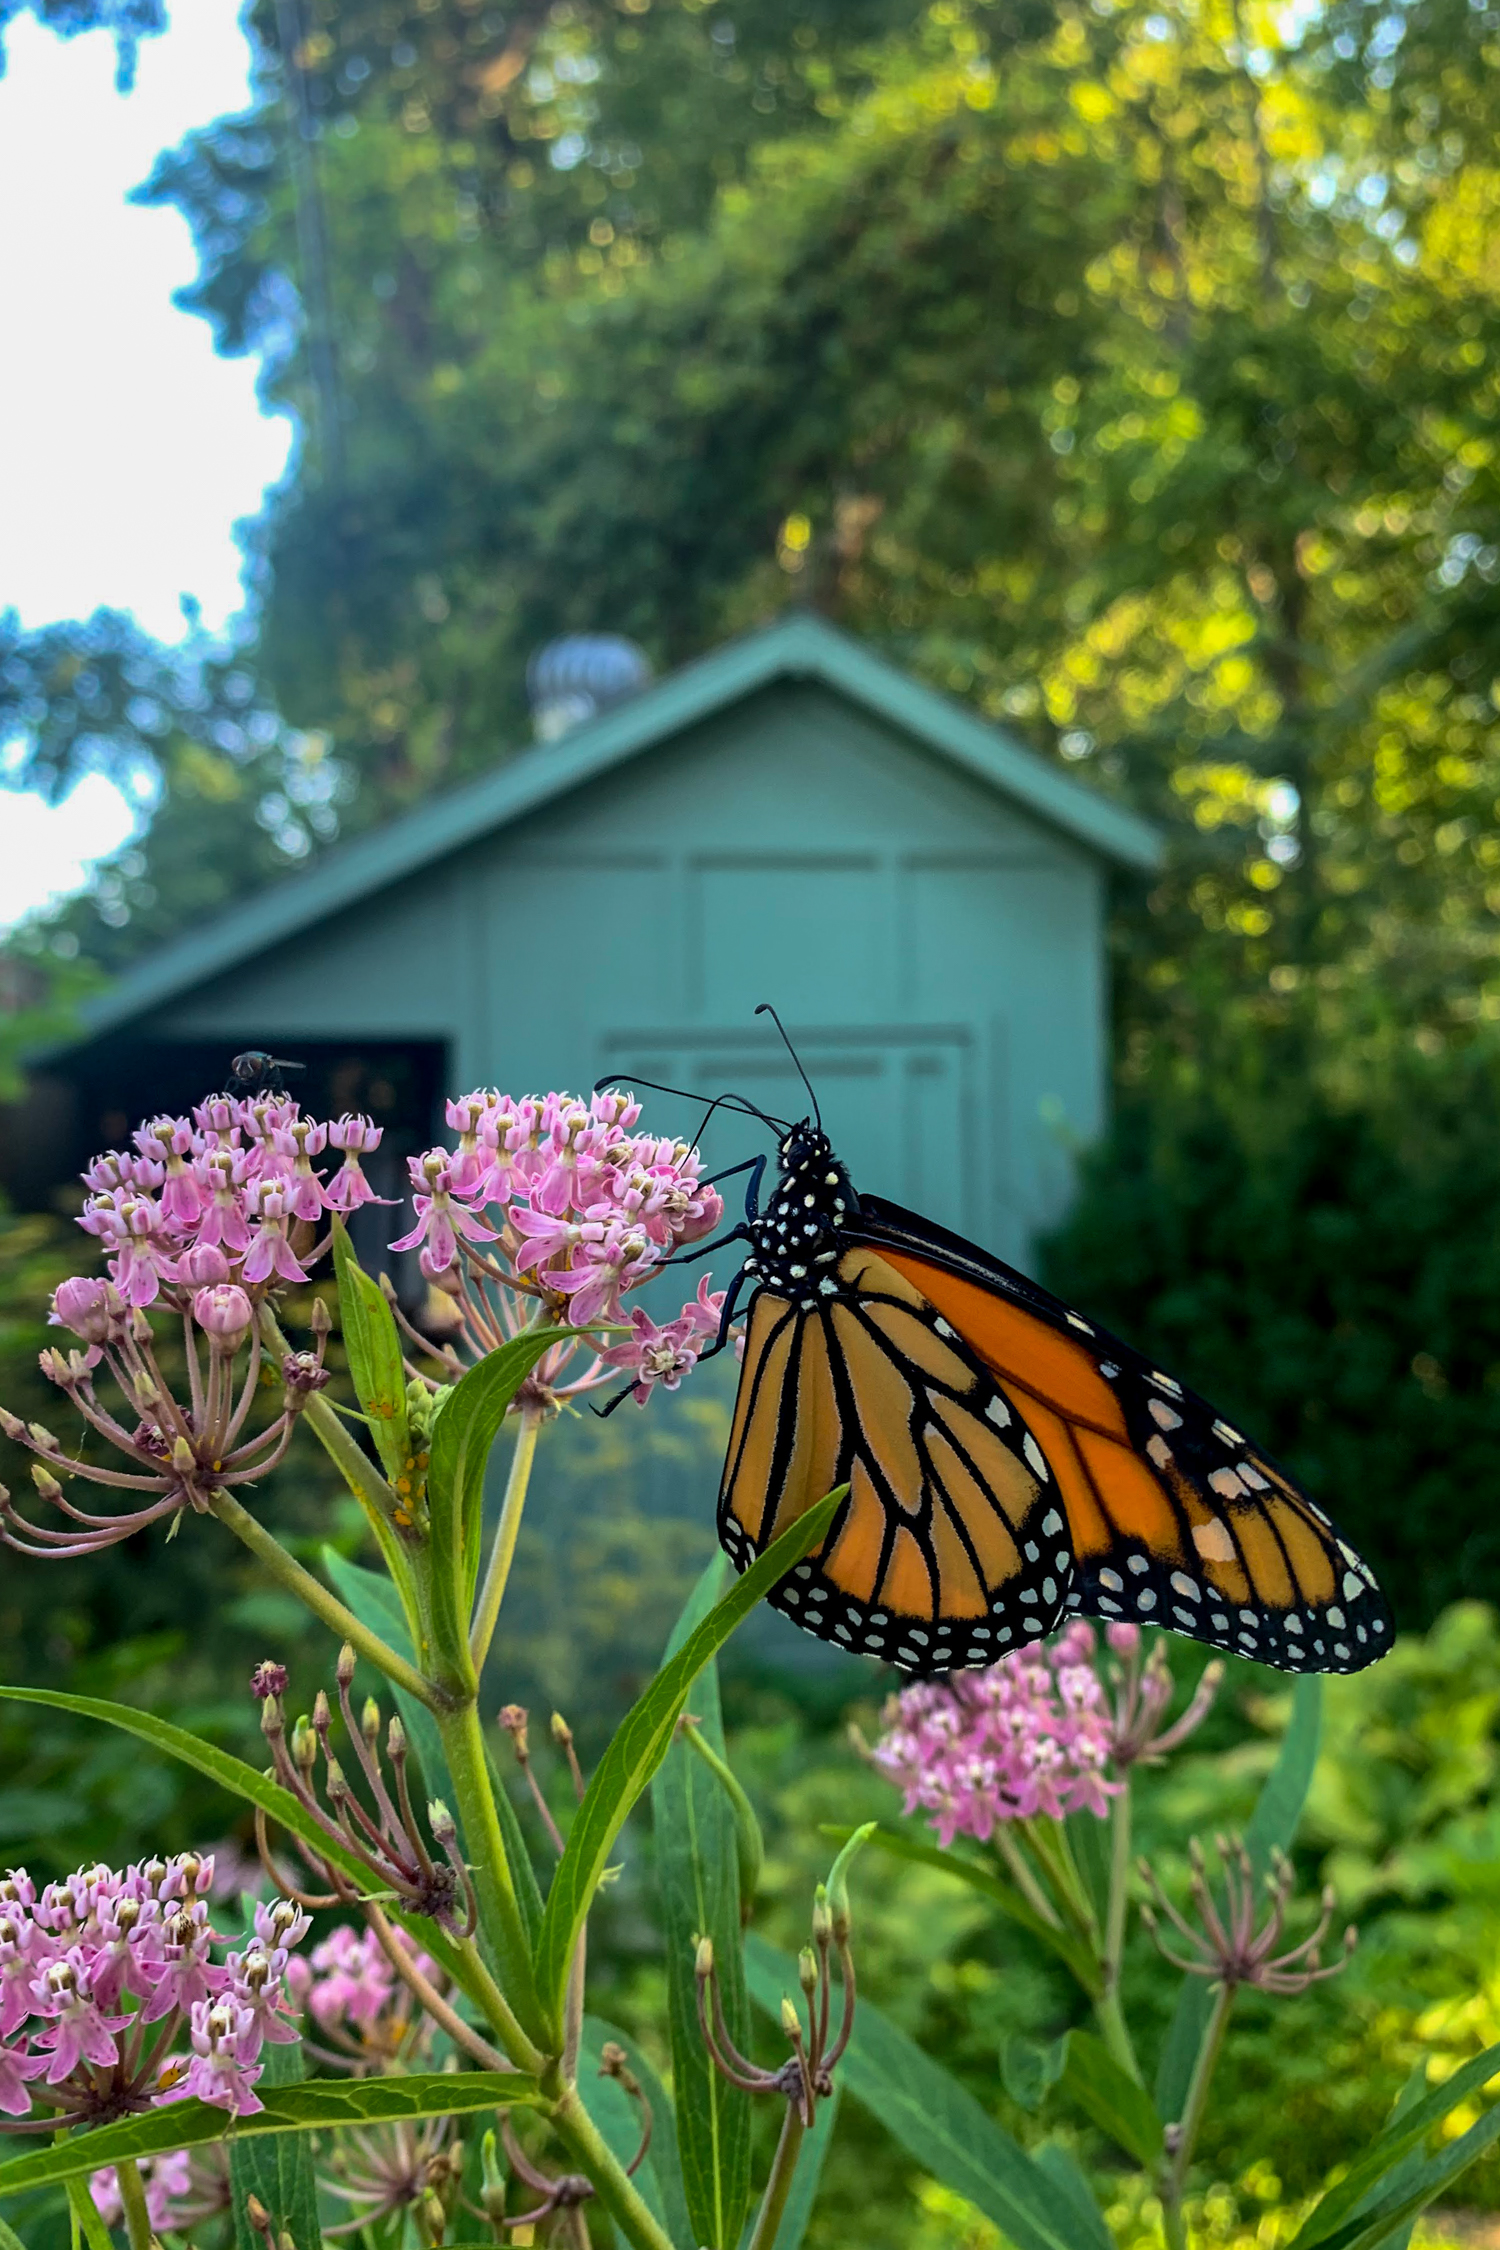 Monarch butterfly on milkweed bloom.